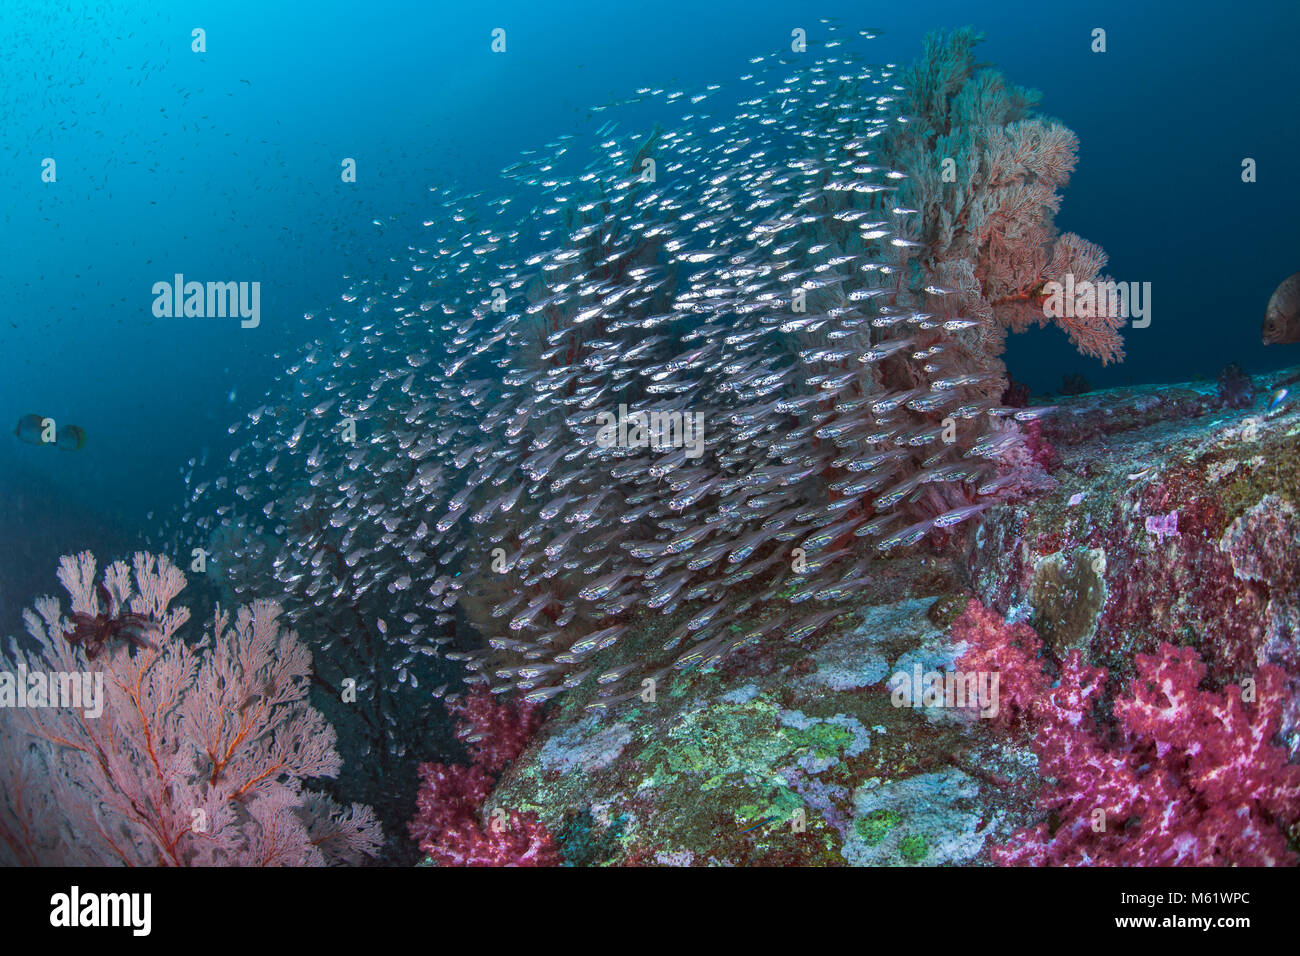 Scuola di argento traslucido glassfish riflettono il colore dei loro dintorni come una scintillante caleidoscopio. Richelieu Rock, sul Mare delle Andamane, Thailandia. Foto Stock